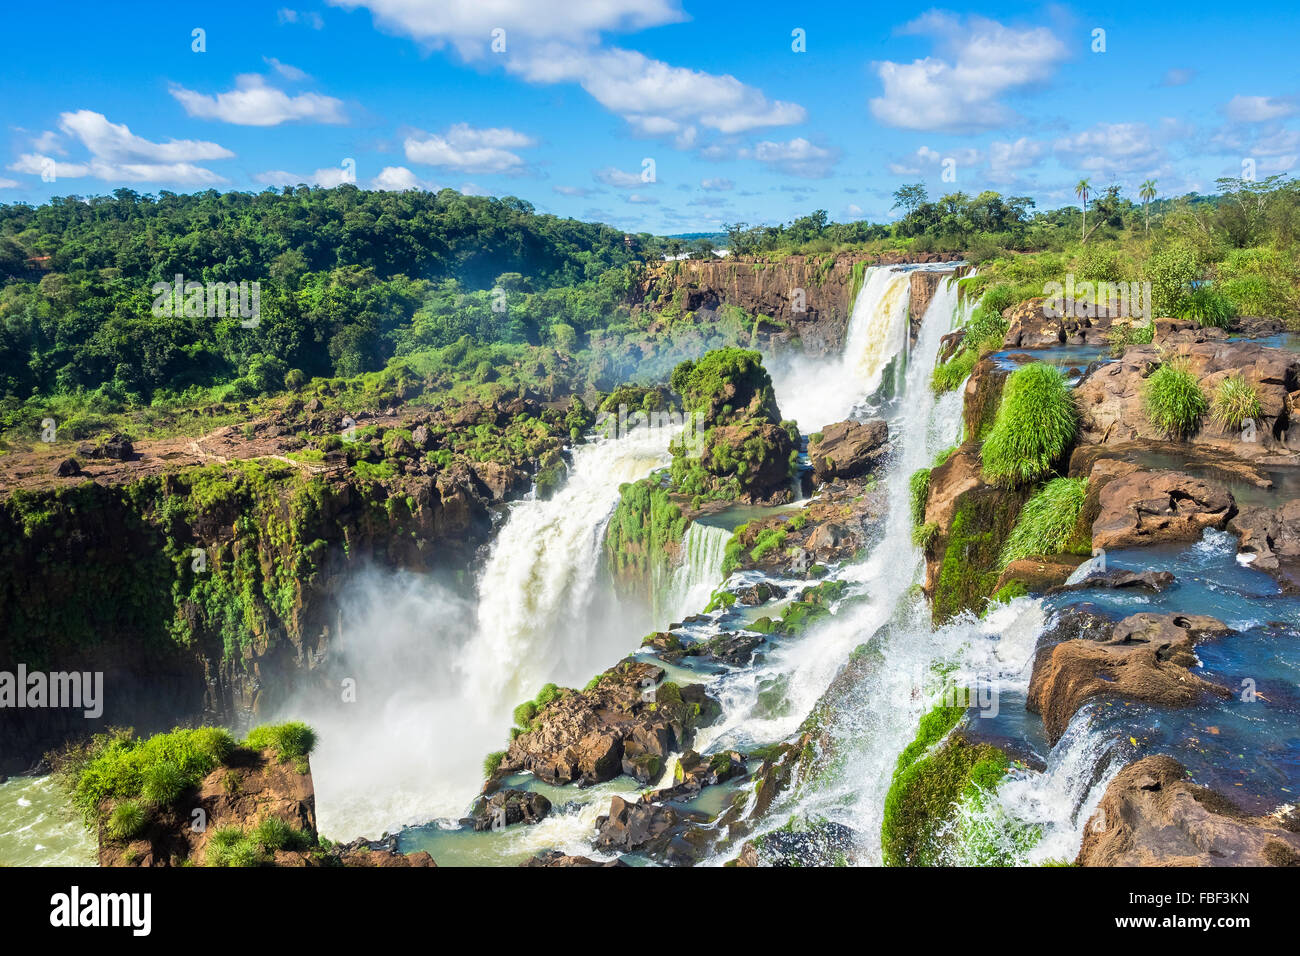 Image result for iguazu falls argentina and brazil